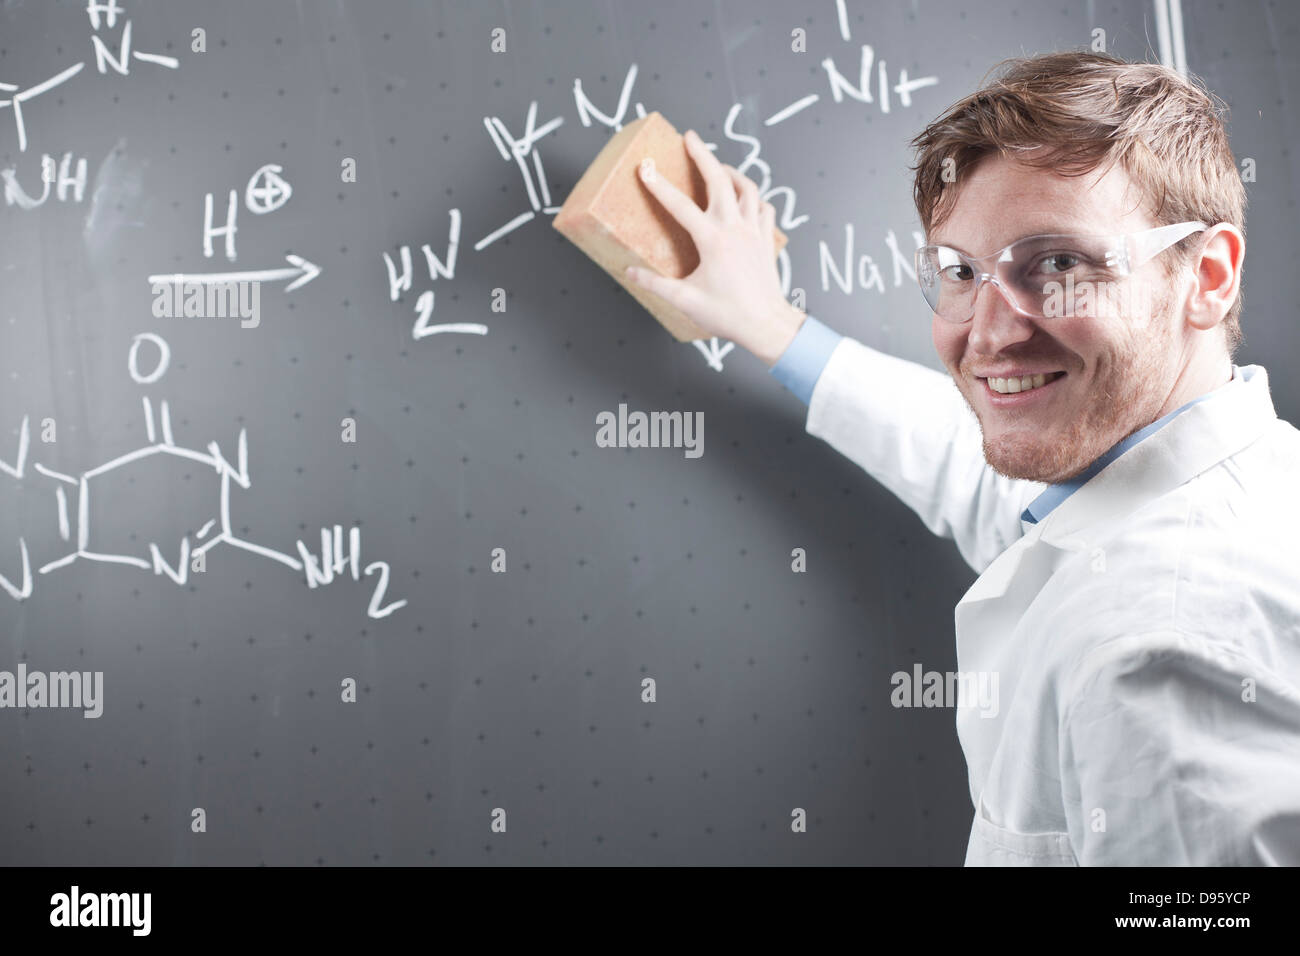 L'Allemagne, l'effacement du jeune scientifique de l'équation chimique sur tableau Banque D'Images